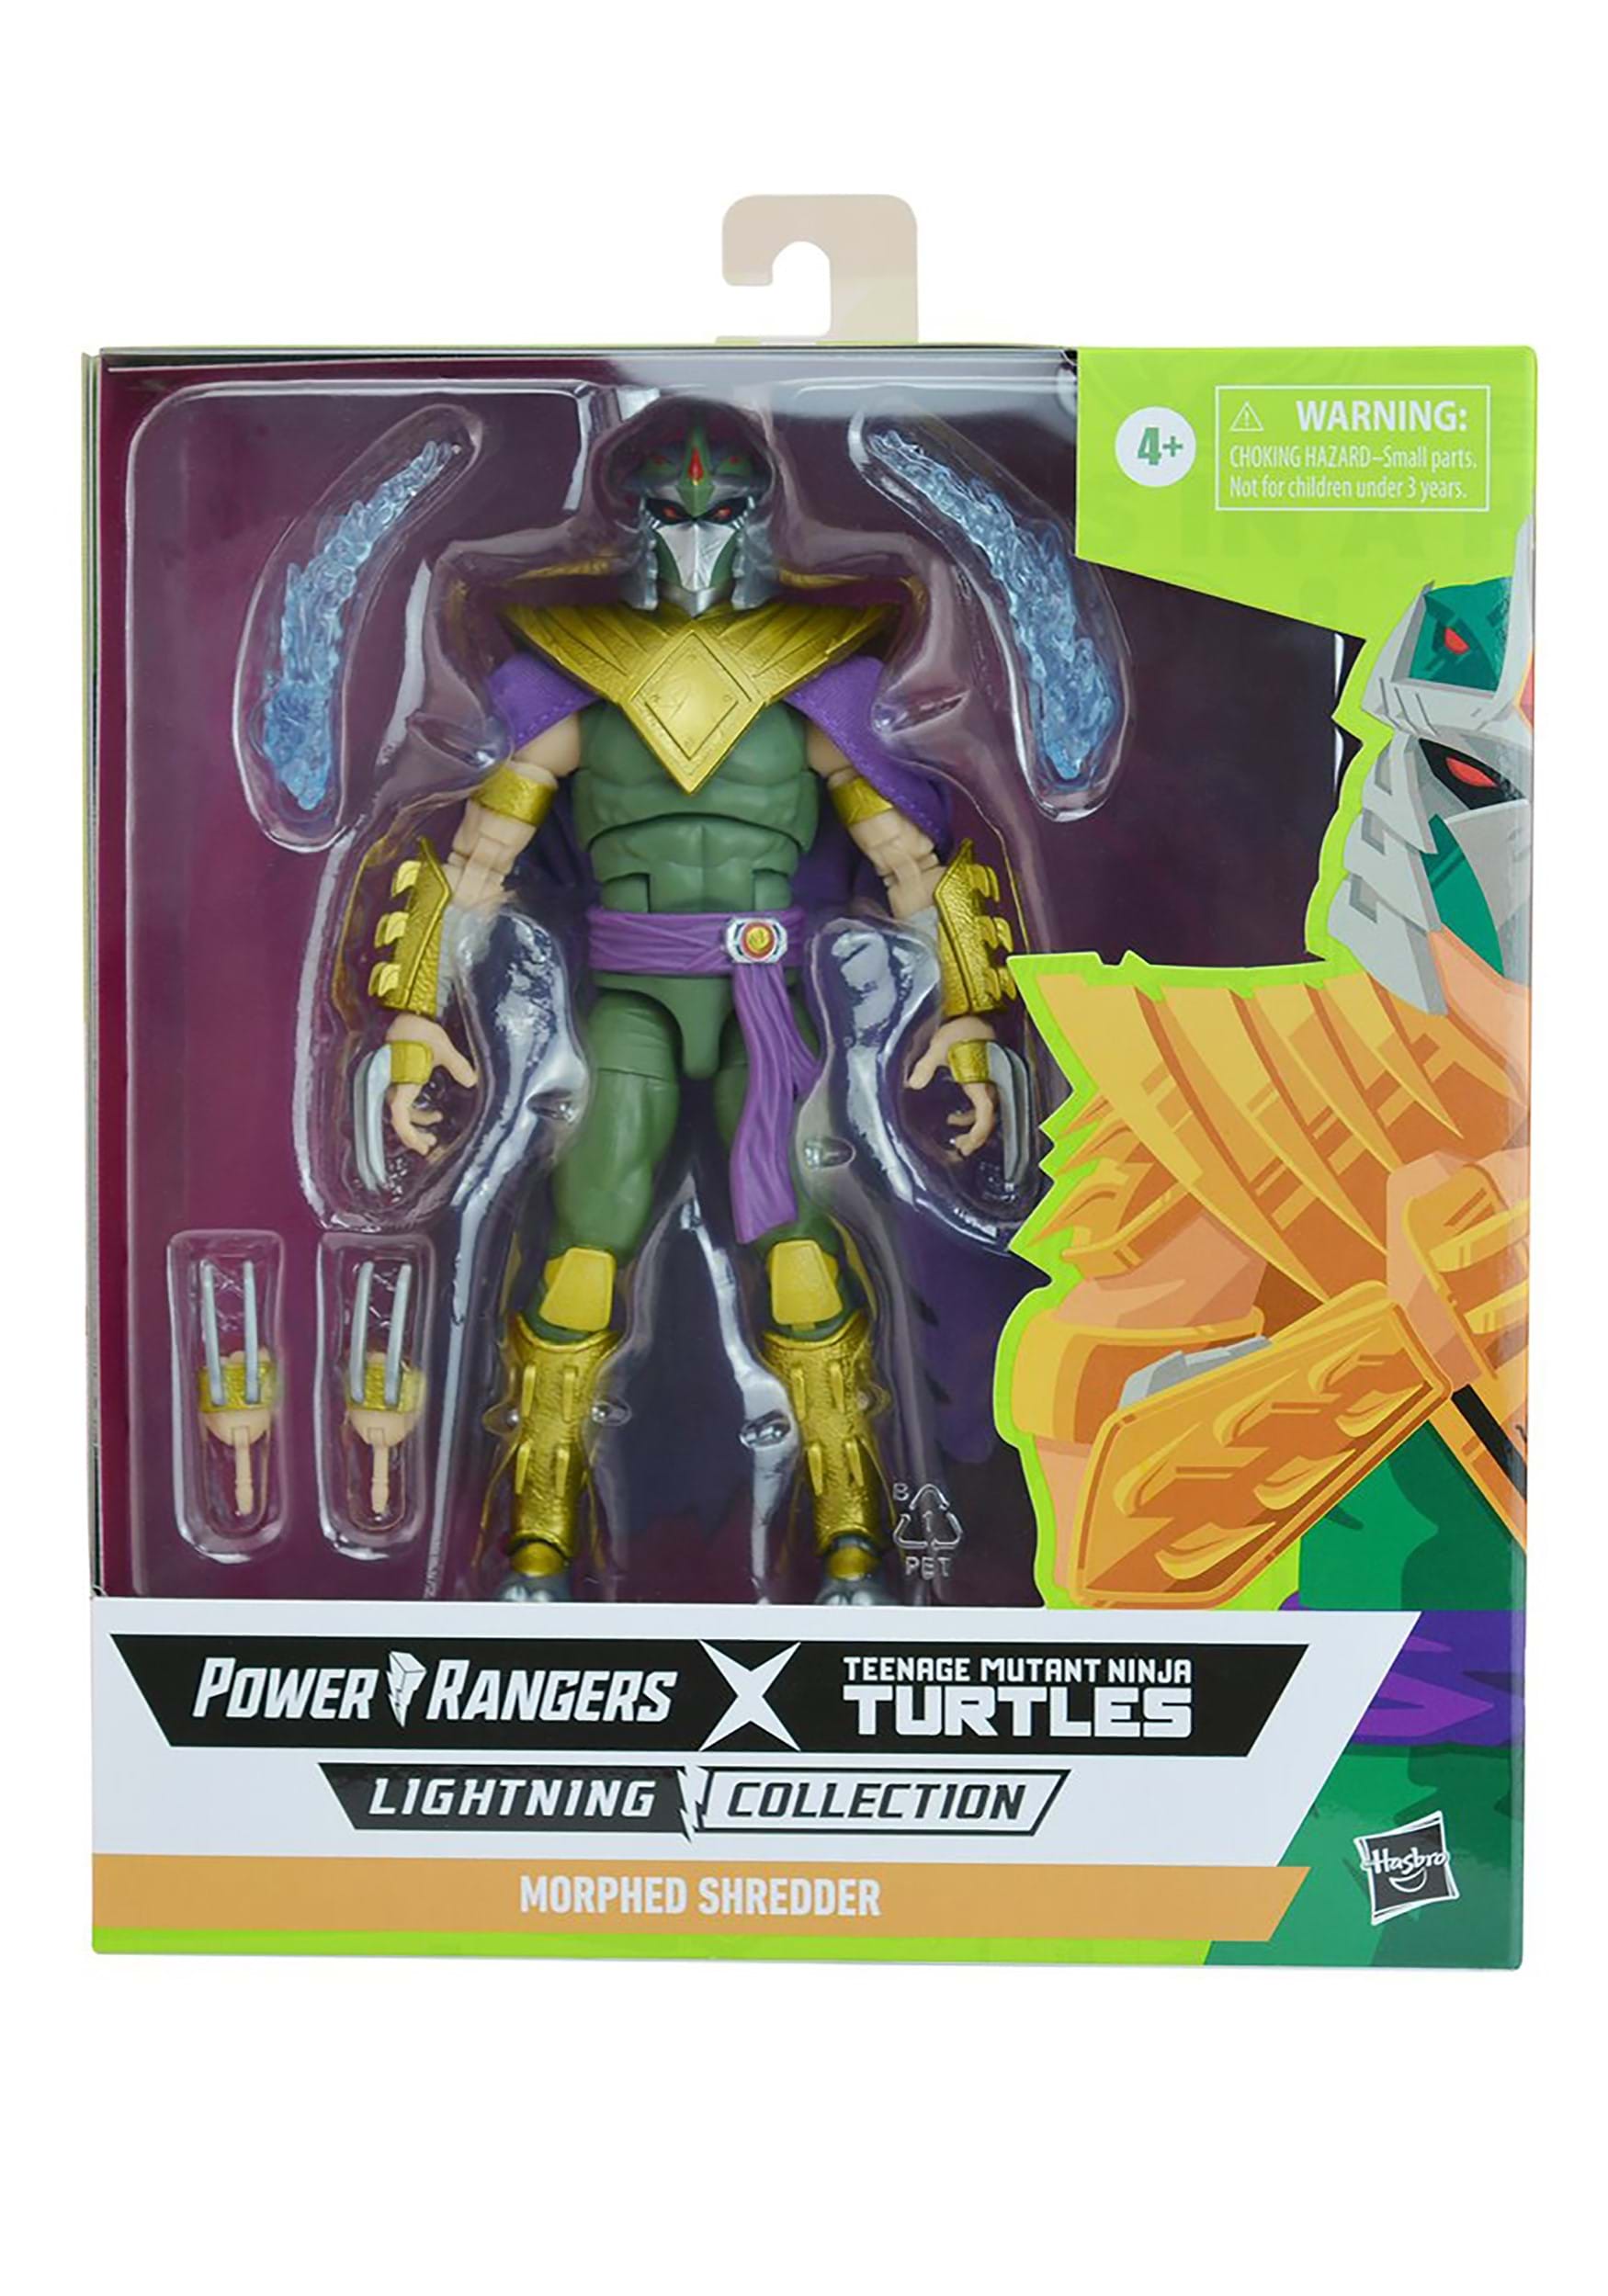 Power Rangers X TMNT Lightning Collection Morphed Shredder Green Ranger